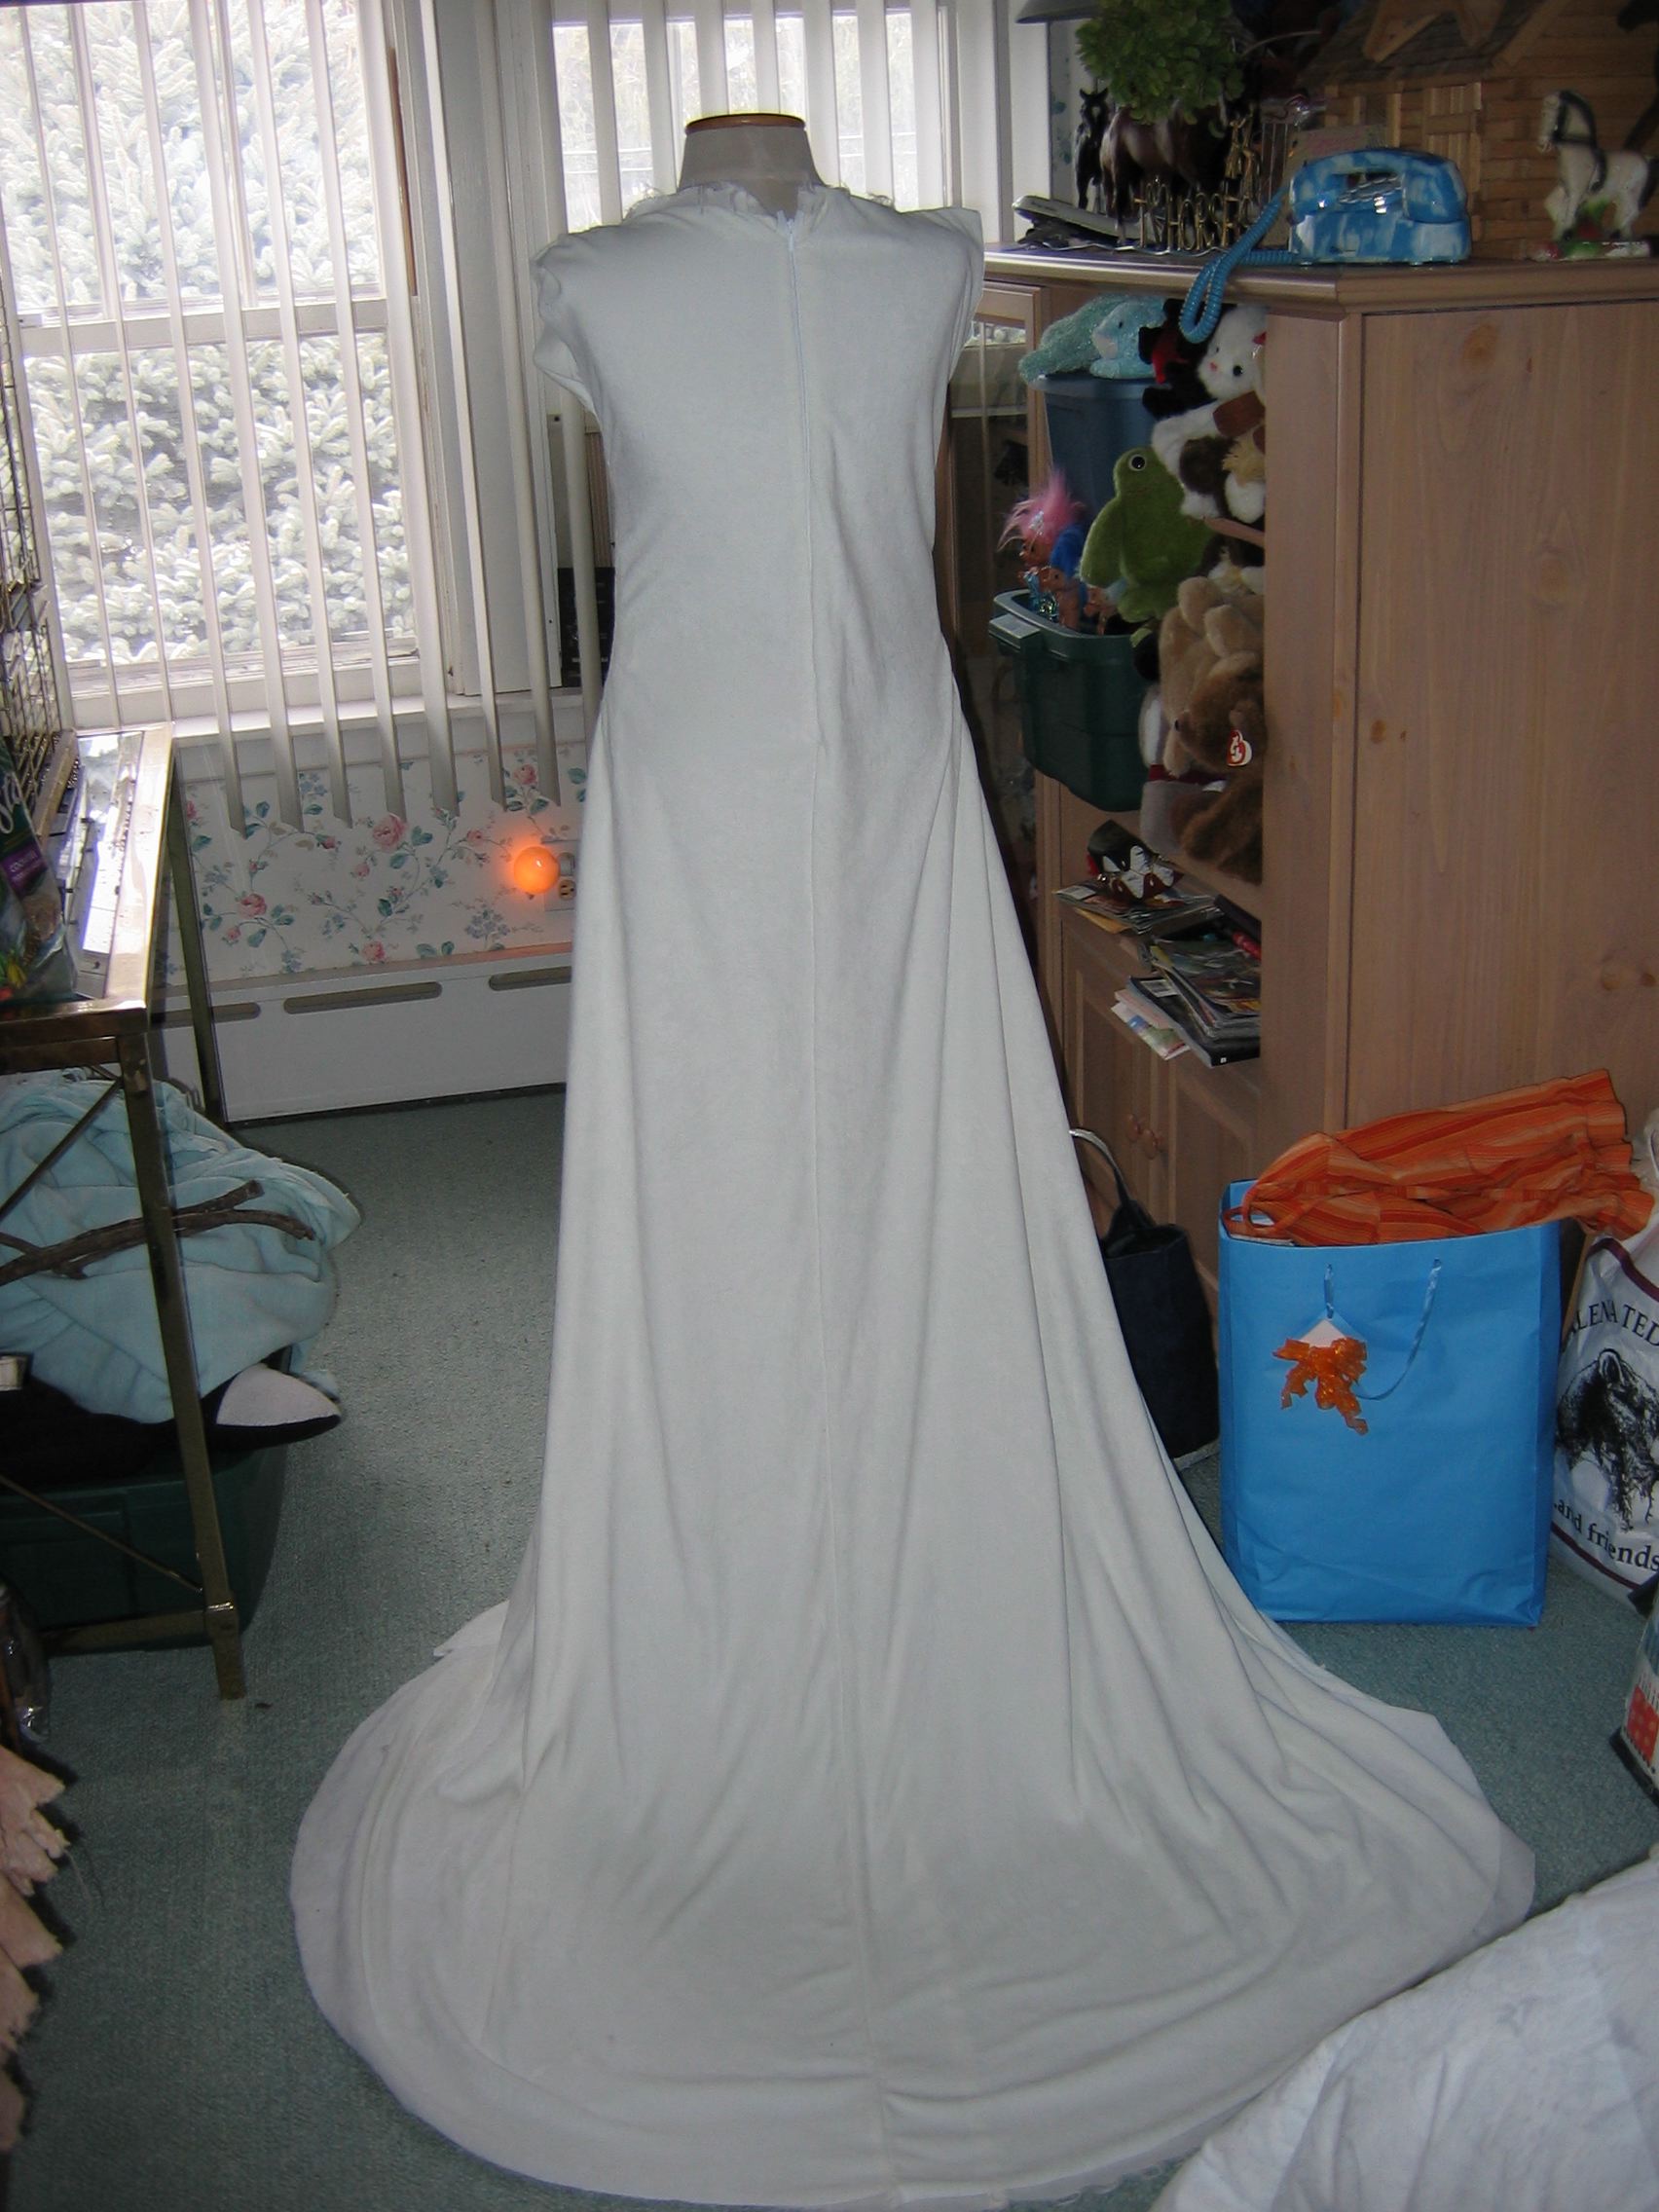 Eowyn's gown - in progress